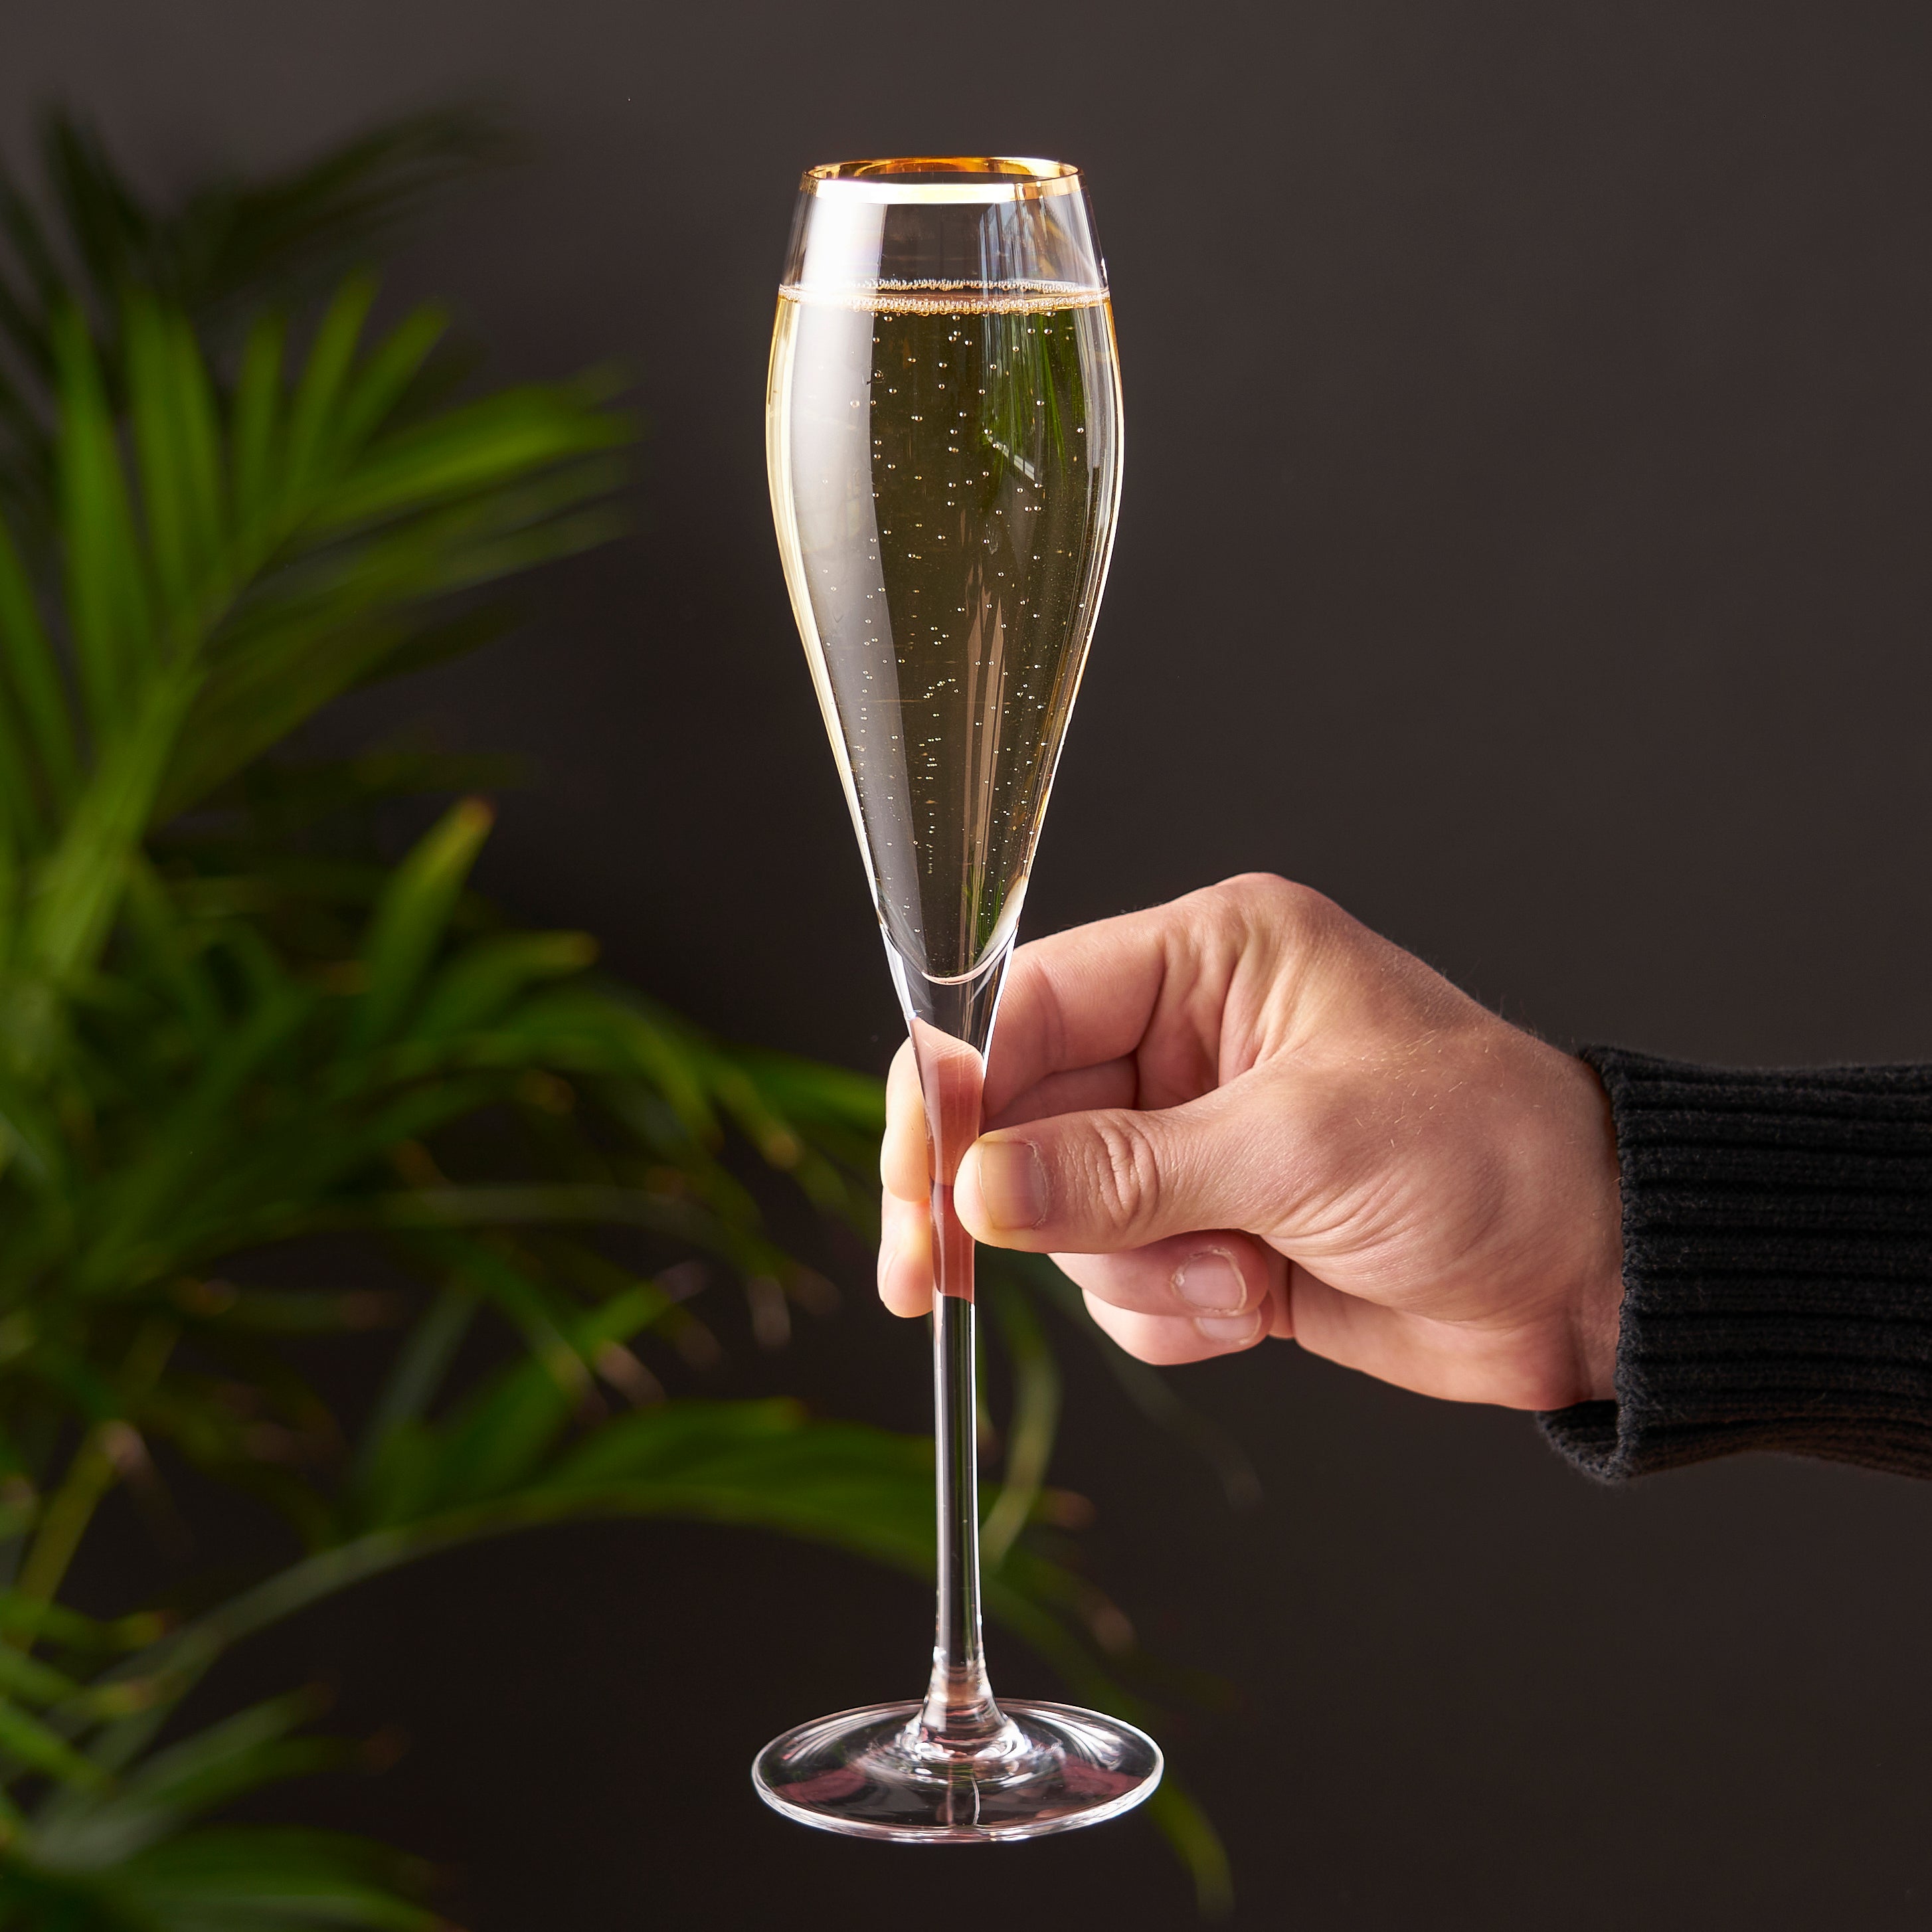 Gold-Rimmed Crystal Champagne Flutes by Viski® (4894)